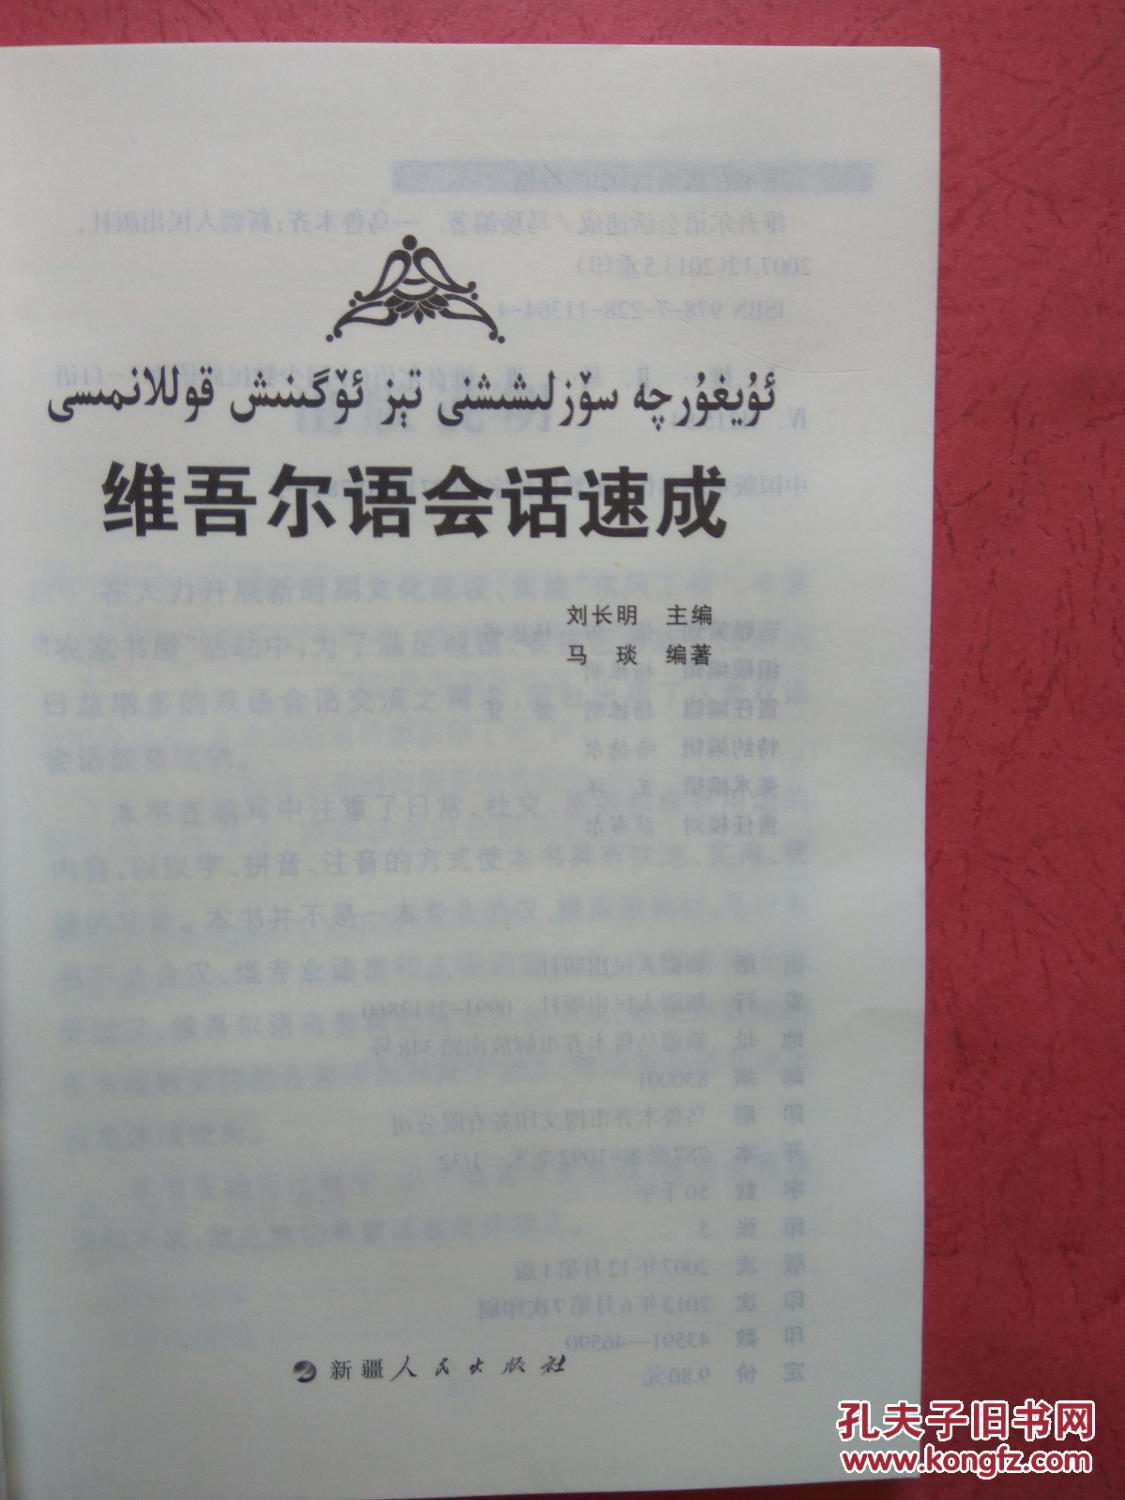 【图】维吾尔语会话速成 【同类书另出版有:大